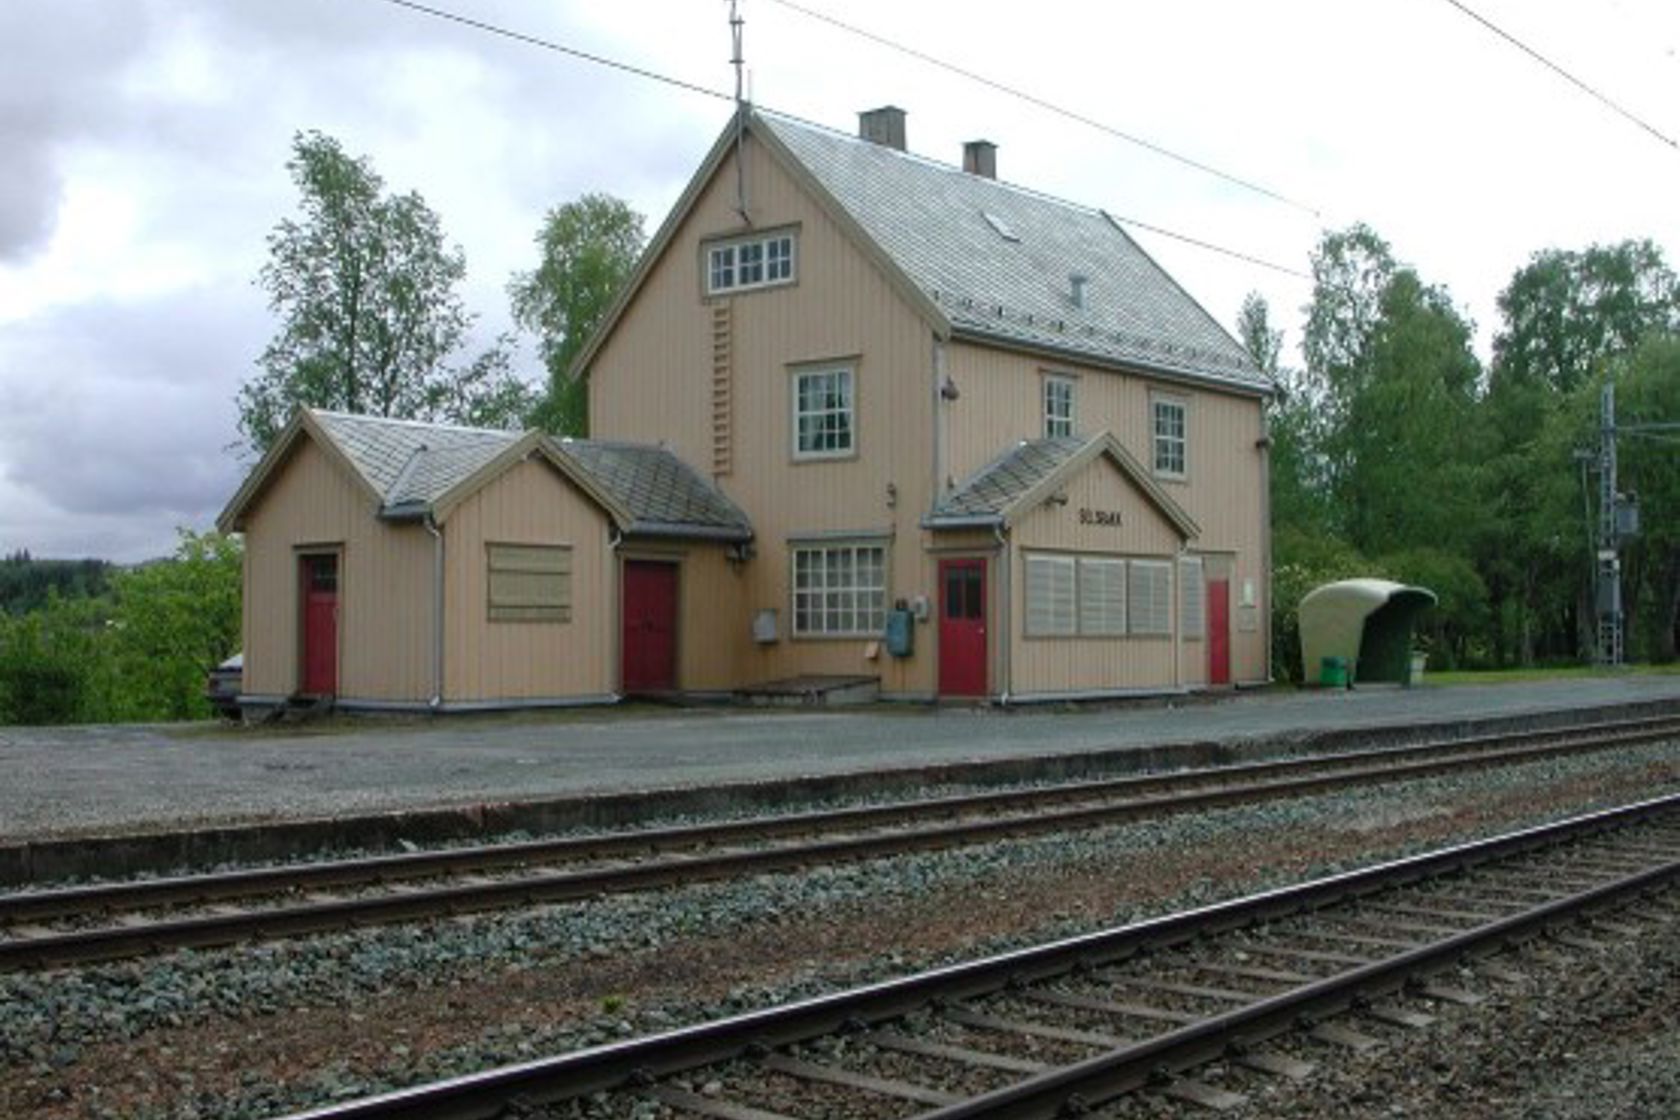 Exterior view of Selsbakk station